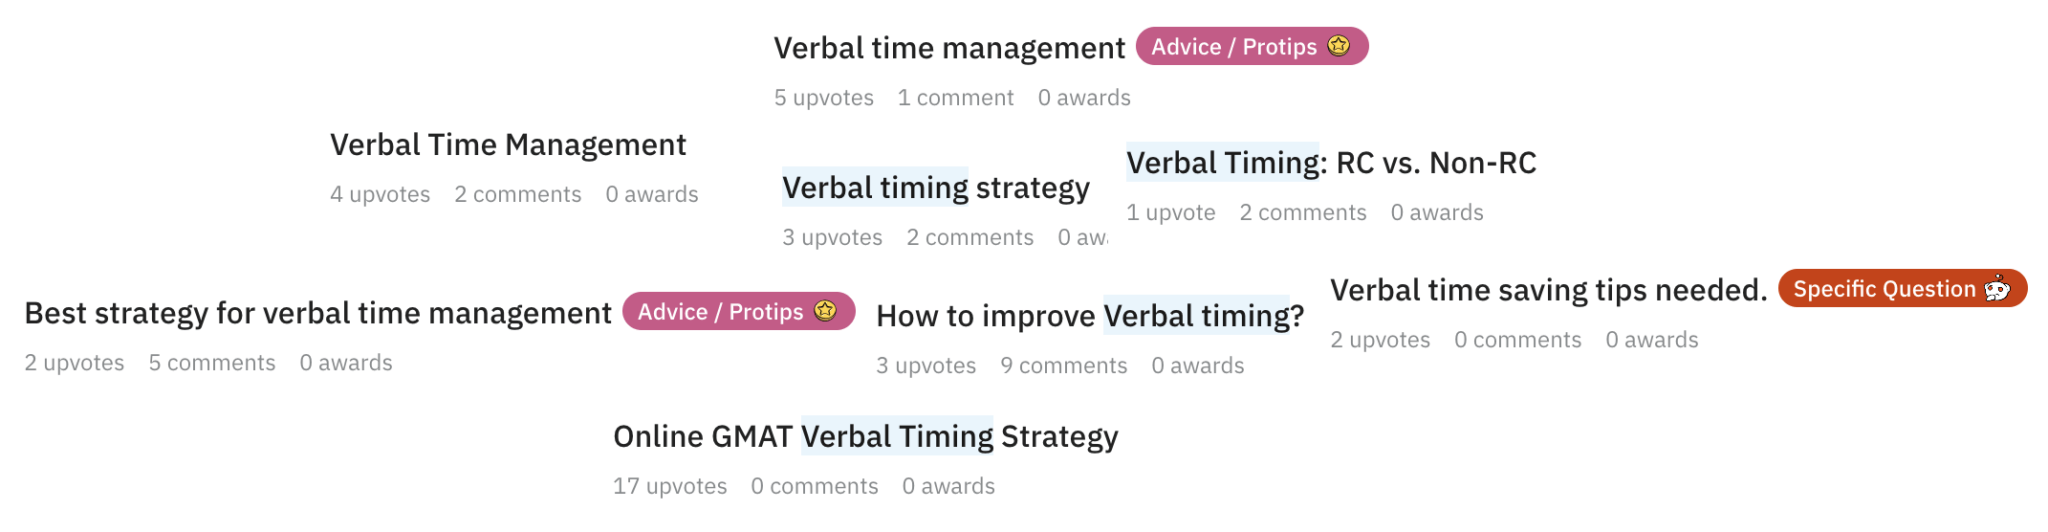 GMAT Verbal Timing Strategies